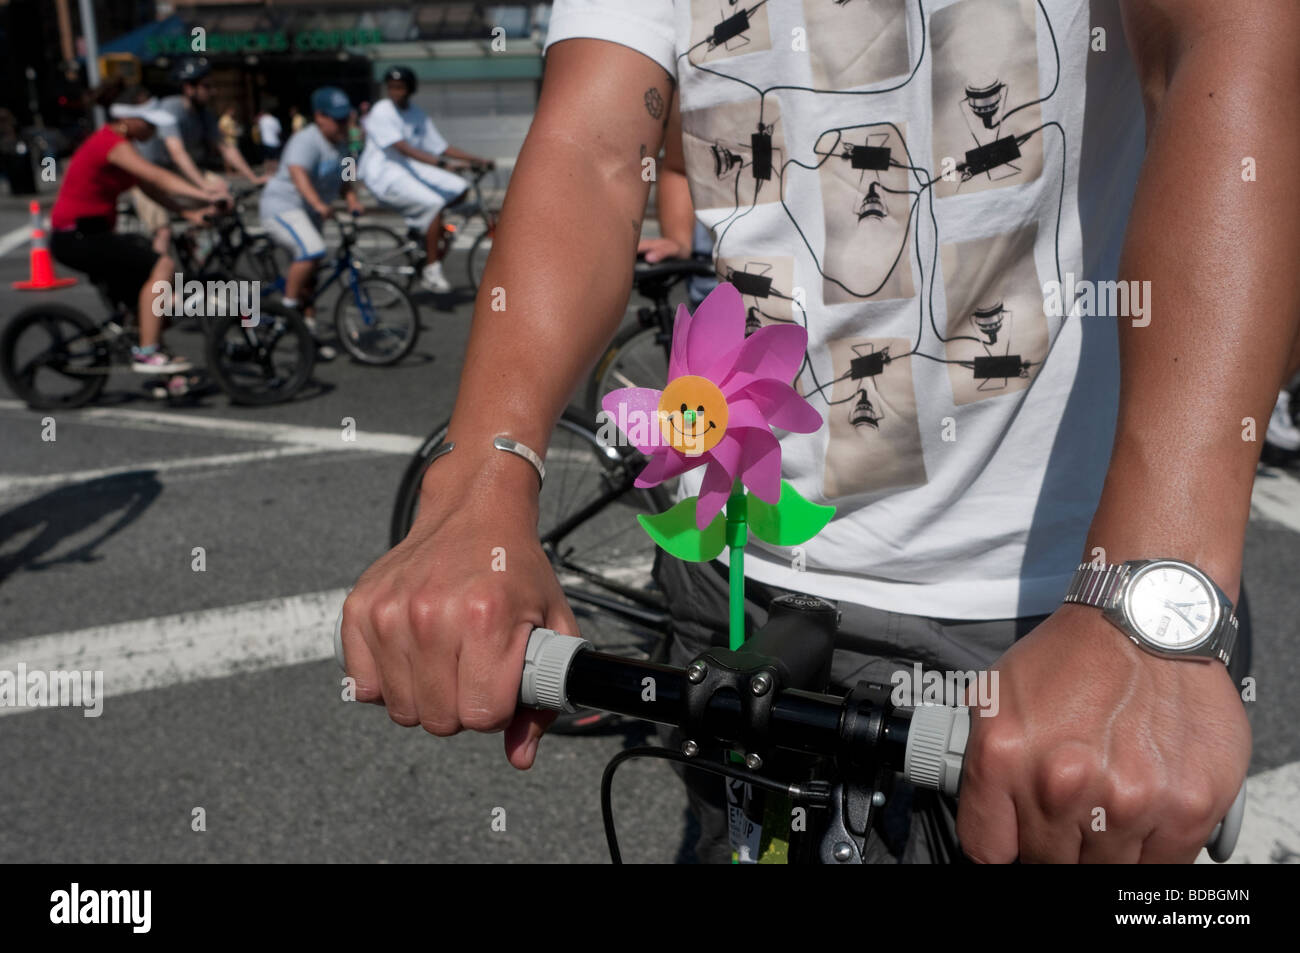 New York, NY - Summer Streets Fahrrad dekoriert mit einem lächelte konfrontiert Pin Rad Stockfoto